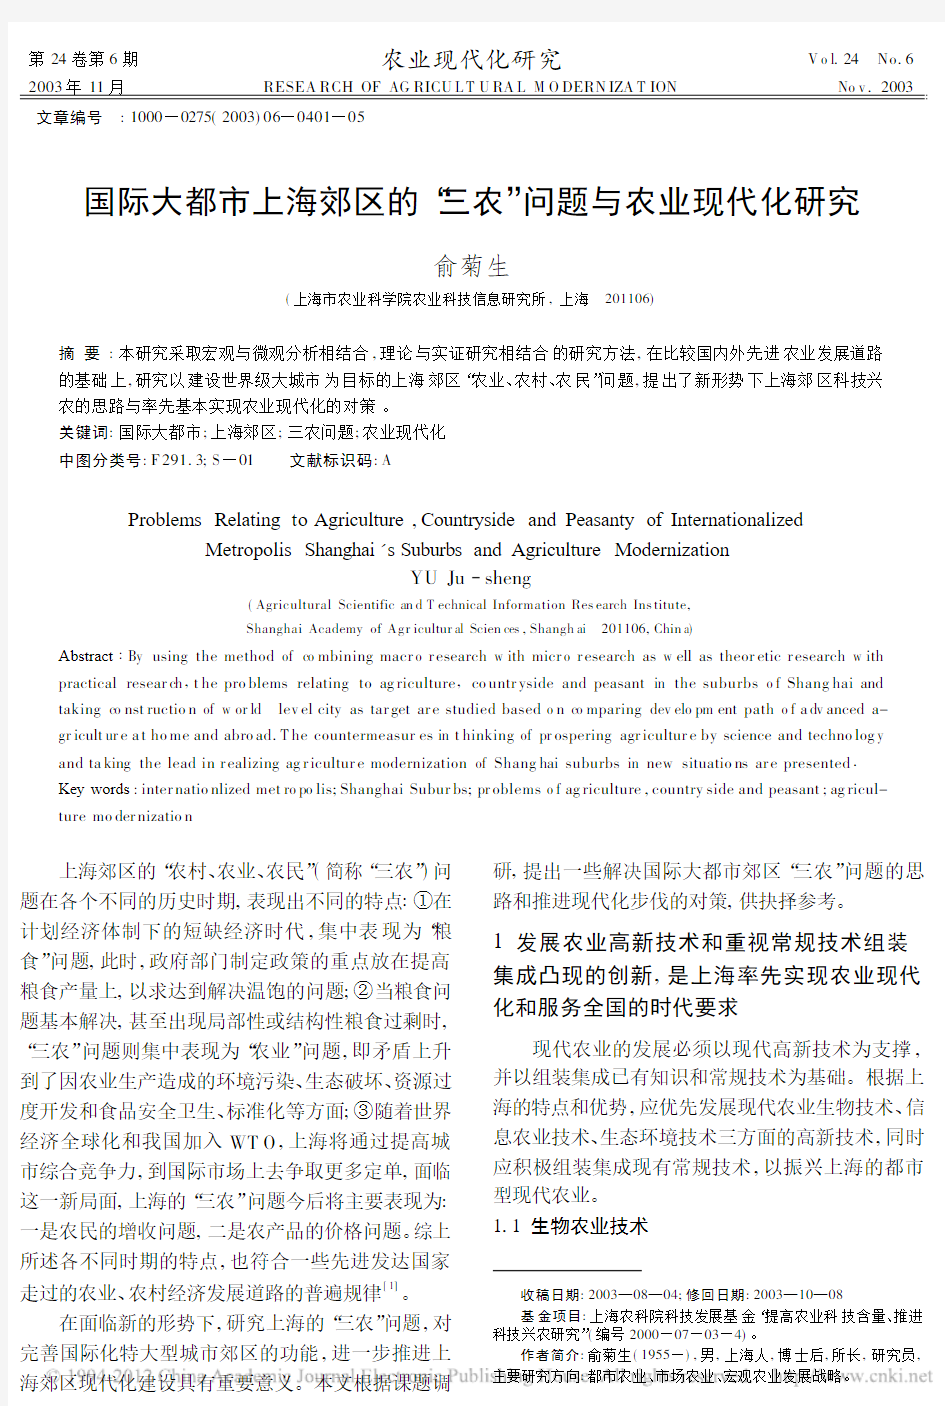 国际大都市上海郊区的_三农_问题与农业现代化研究